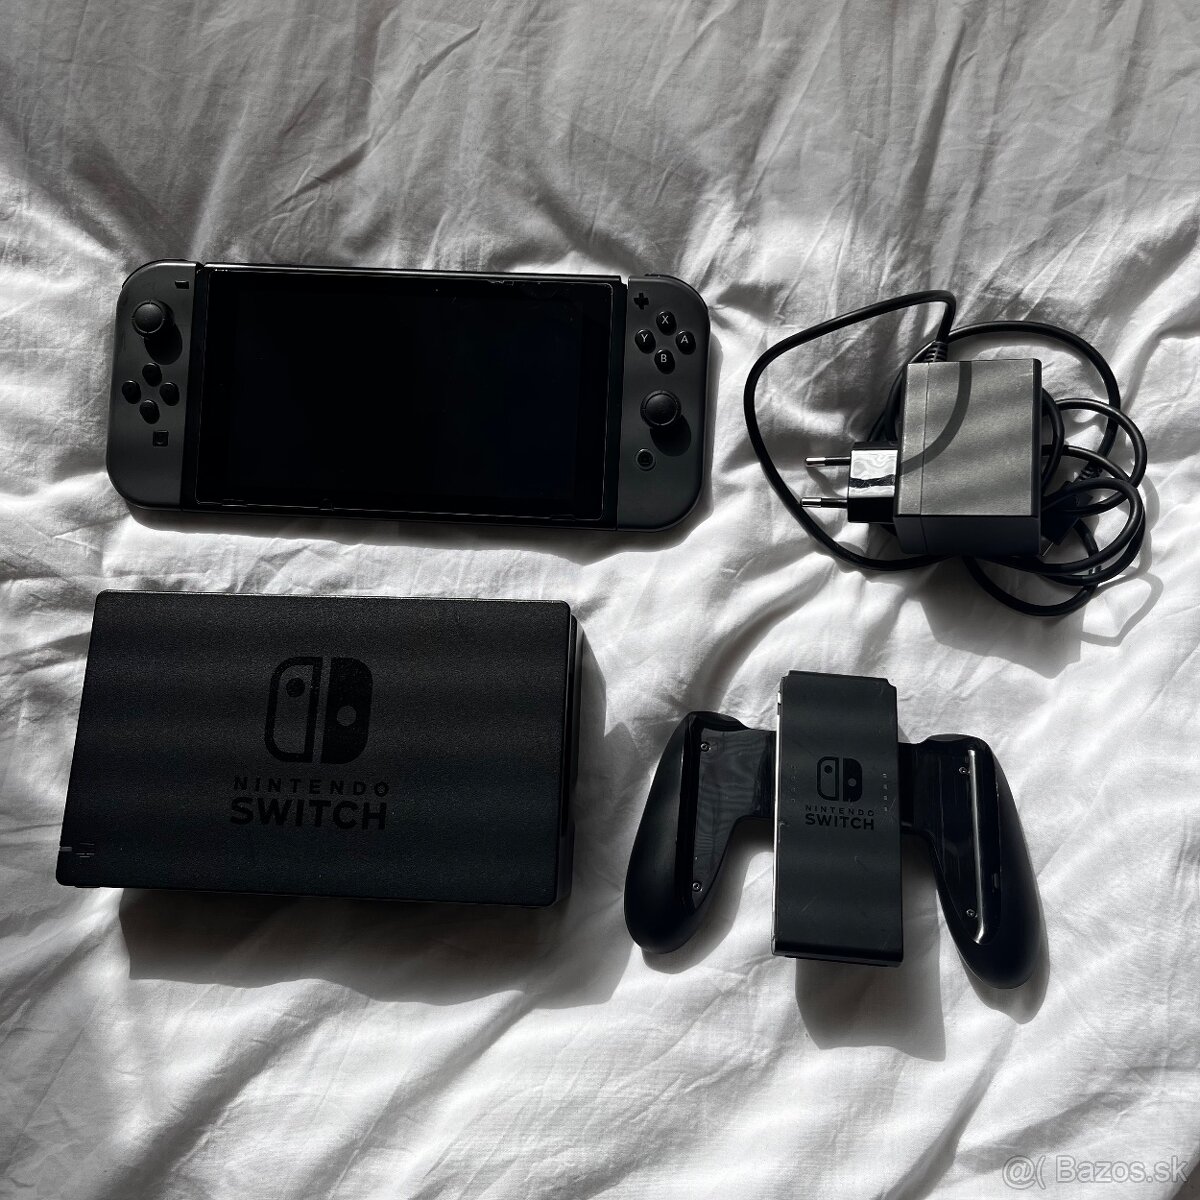 Nintendo switch Grey v2